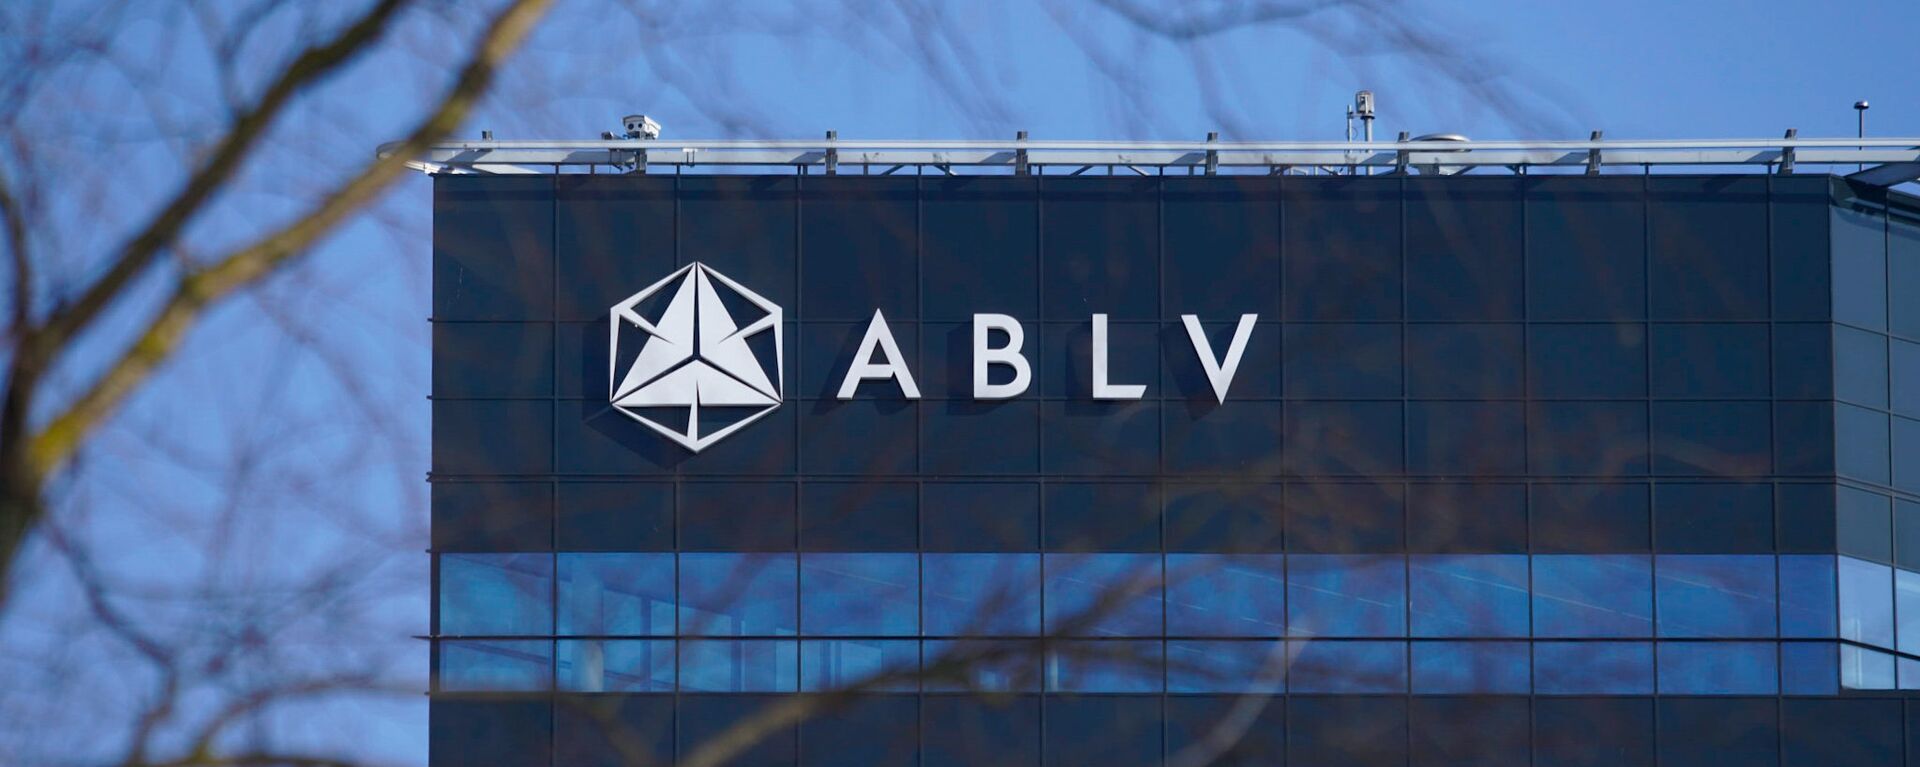 Банк ABLV - Sputnik Latvija, 1920, 20.03.2021